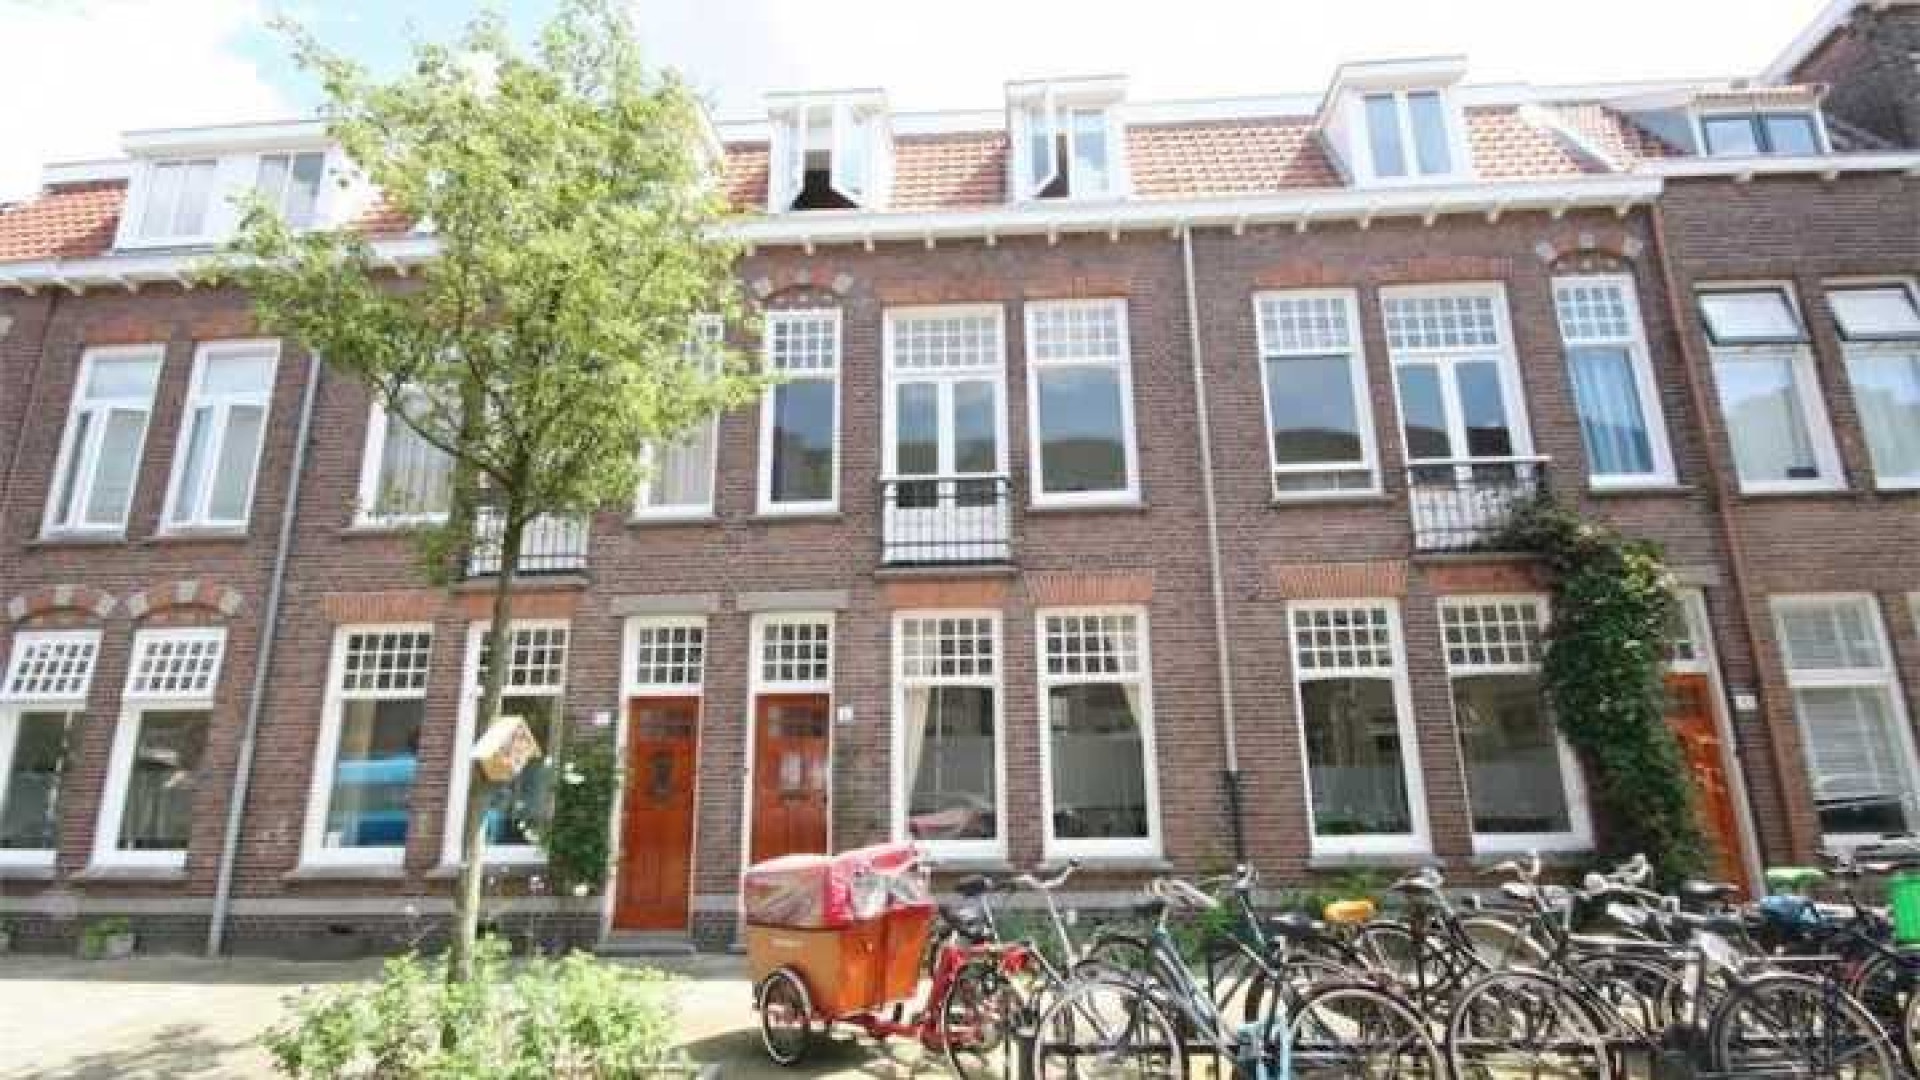 Divorce acteur Fedja van Huet koopt herenhuis in Utrecht. Zie foto's 1